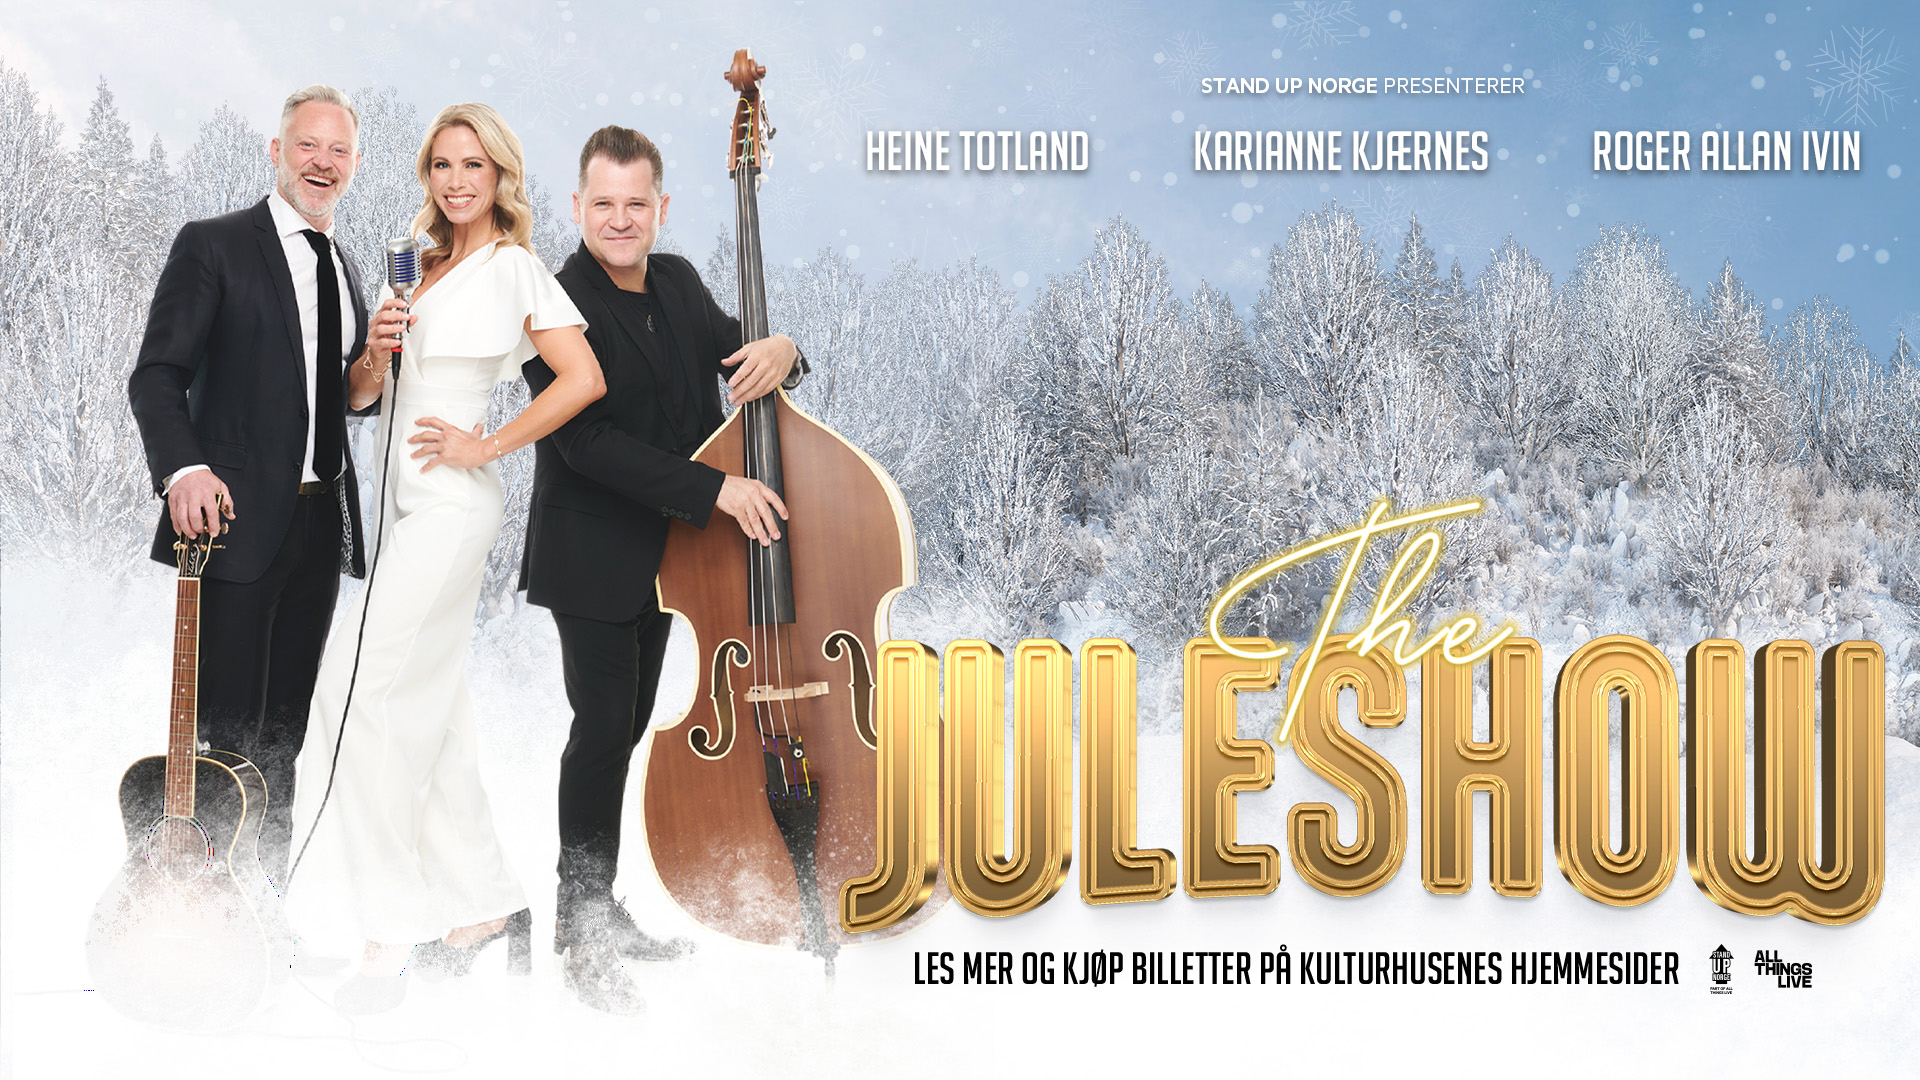 THE JULESHOW – med Heine Totland, Karianne Kjærnes og Roger Allan Ivin